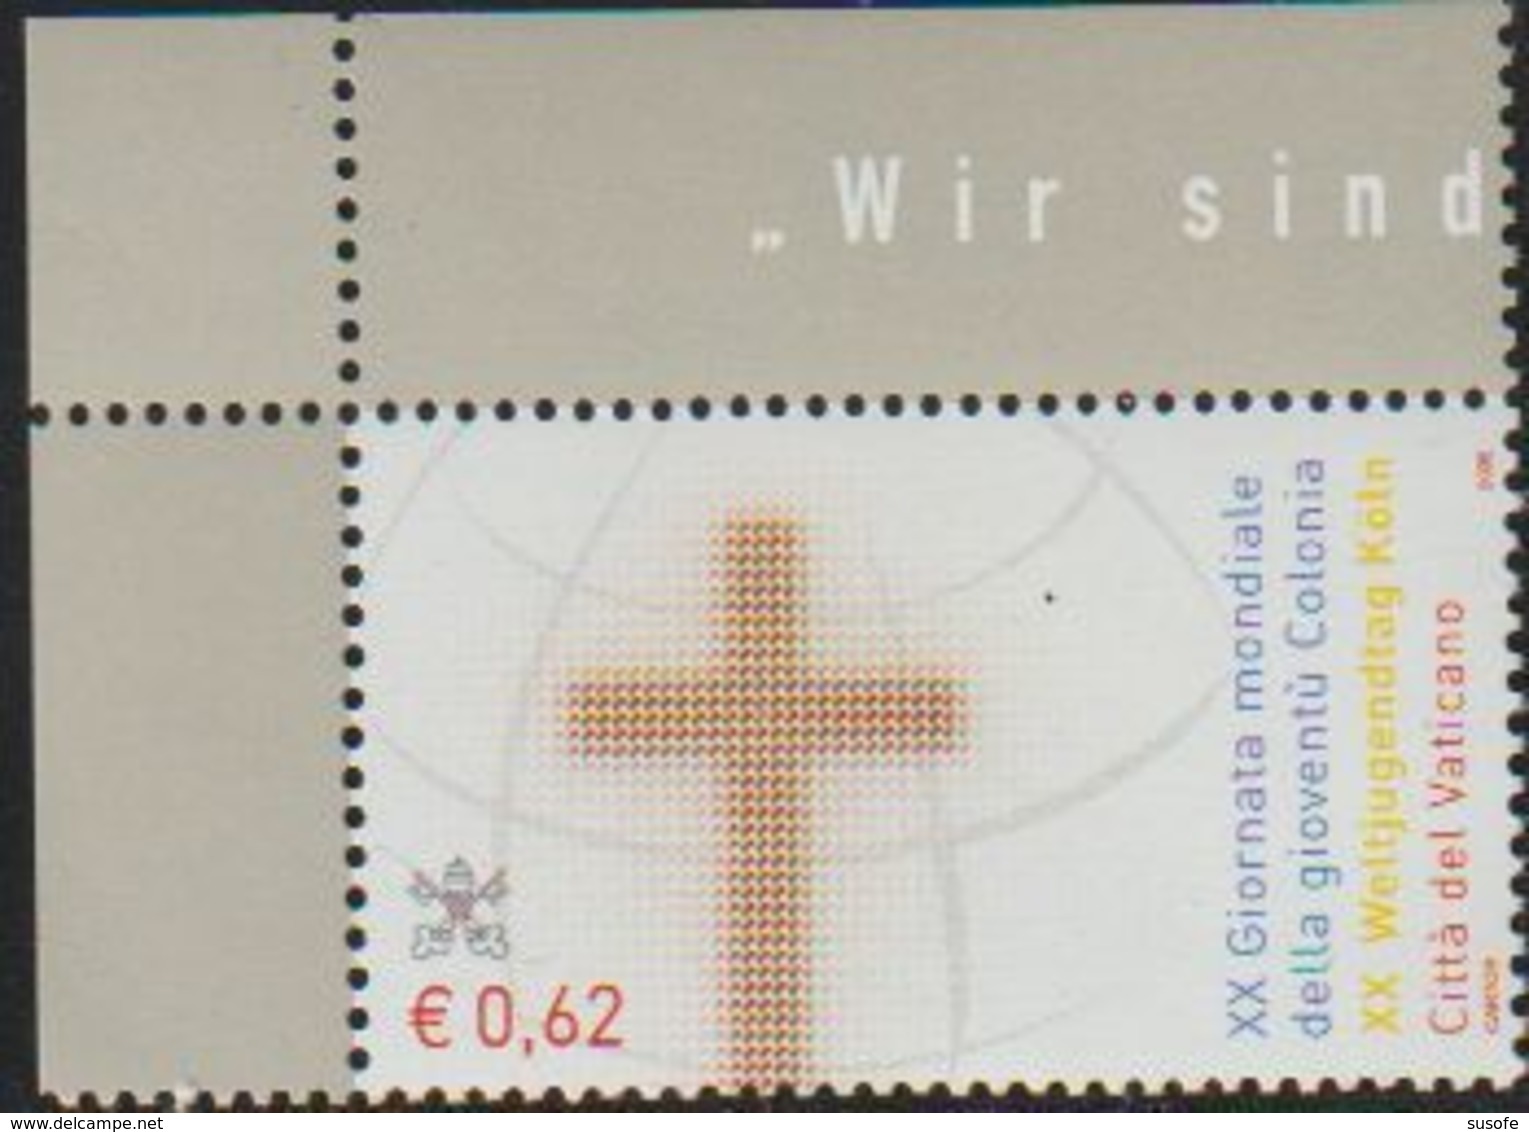 Vaticano 2005 Scott 1298 Sello ** Jornadas De La Juventud En Colonia Conjunta Con Alemania Yvert 1377 Michel 1520 Vatica - Unused Stamps